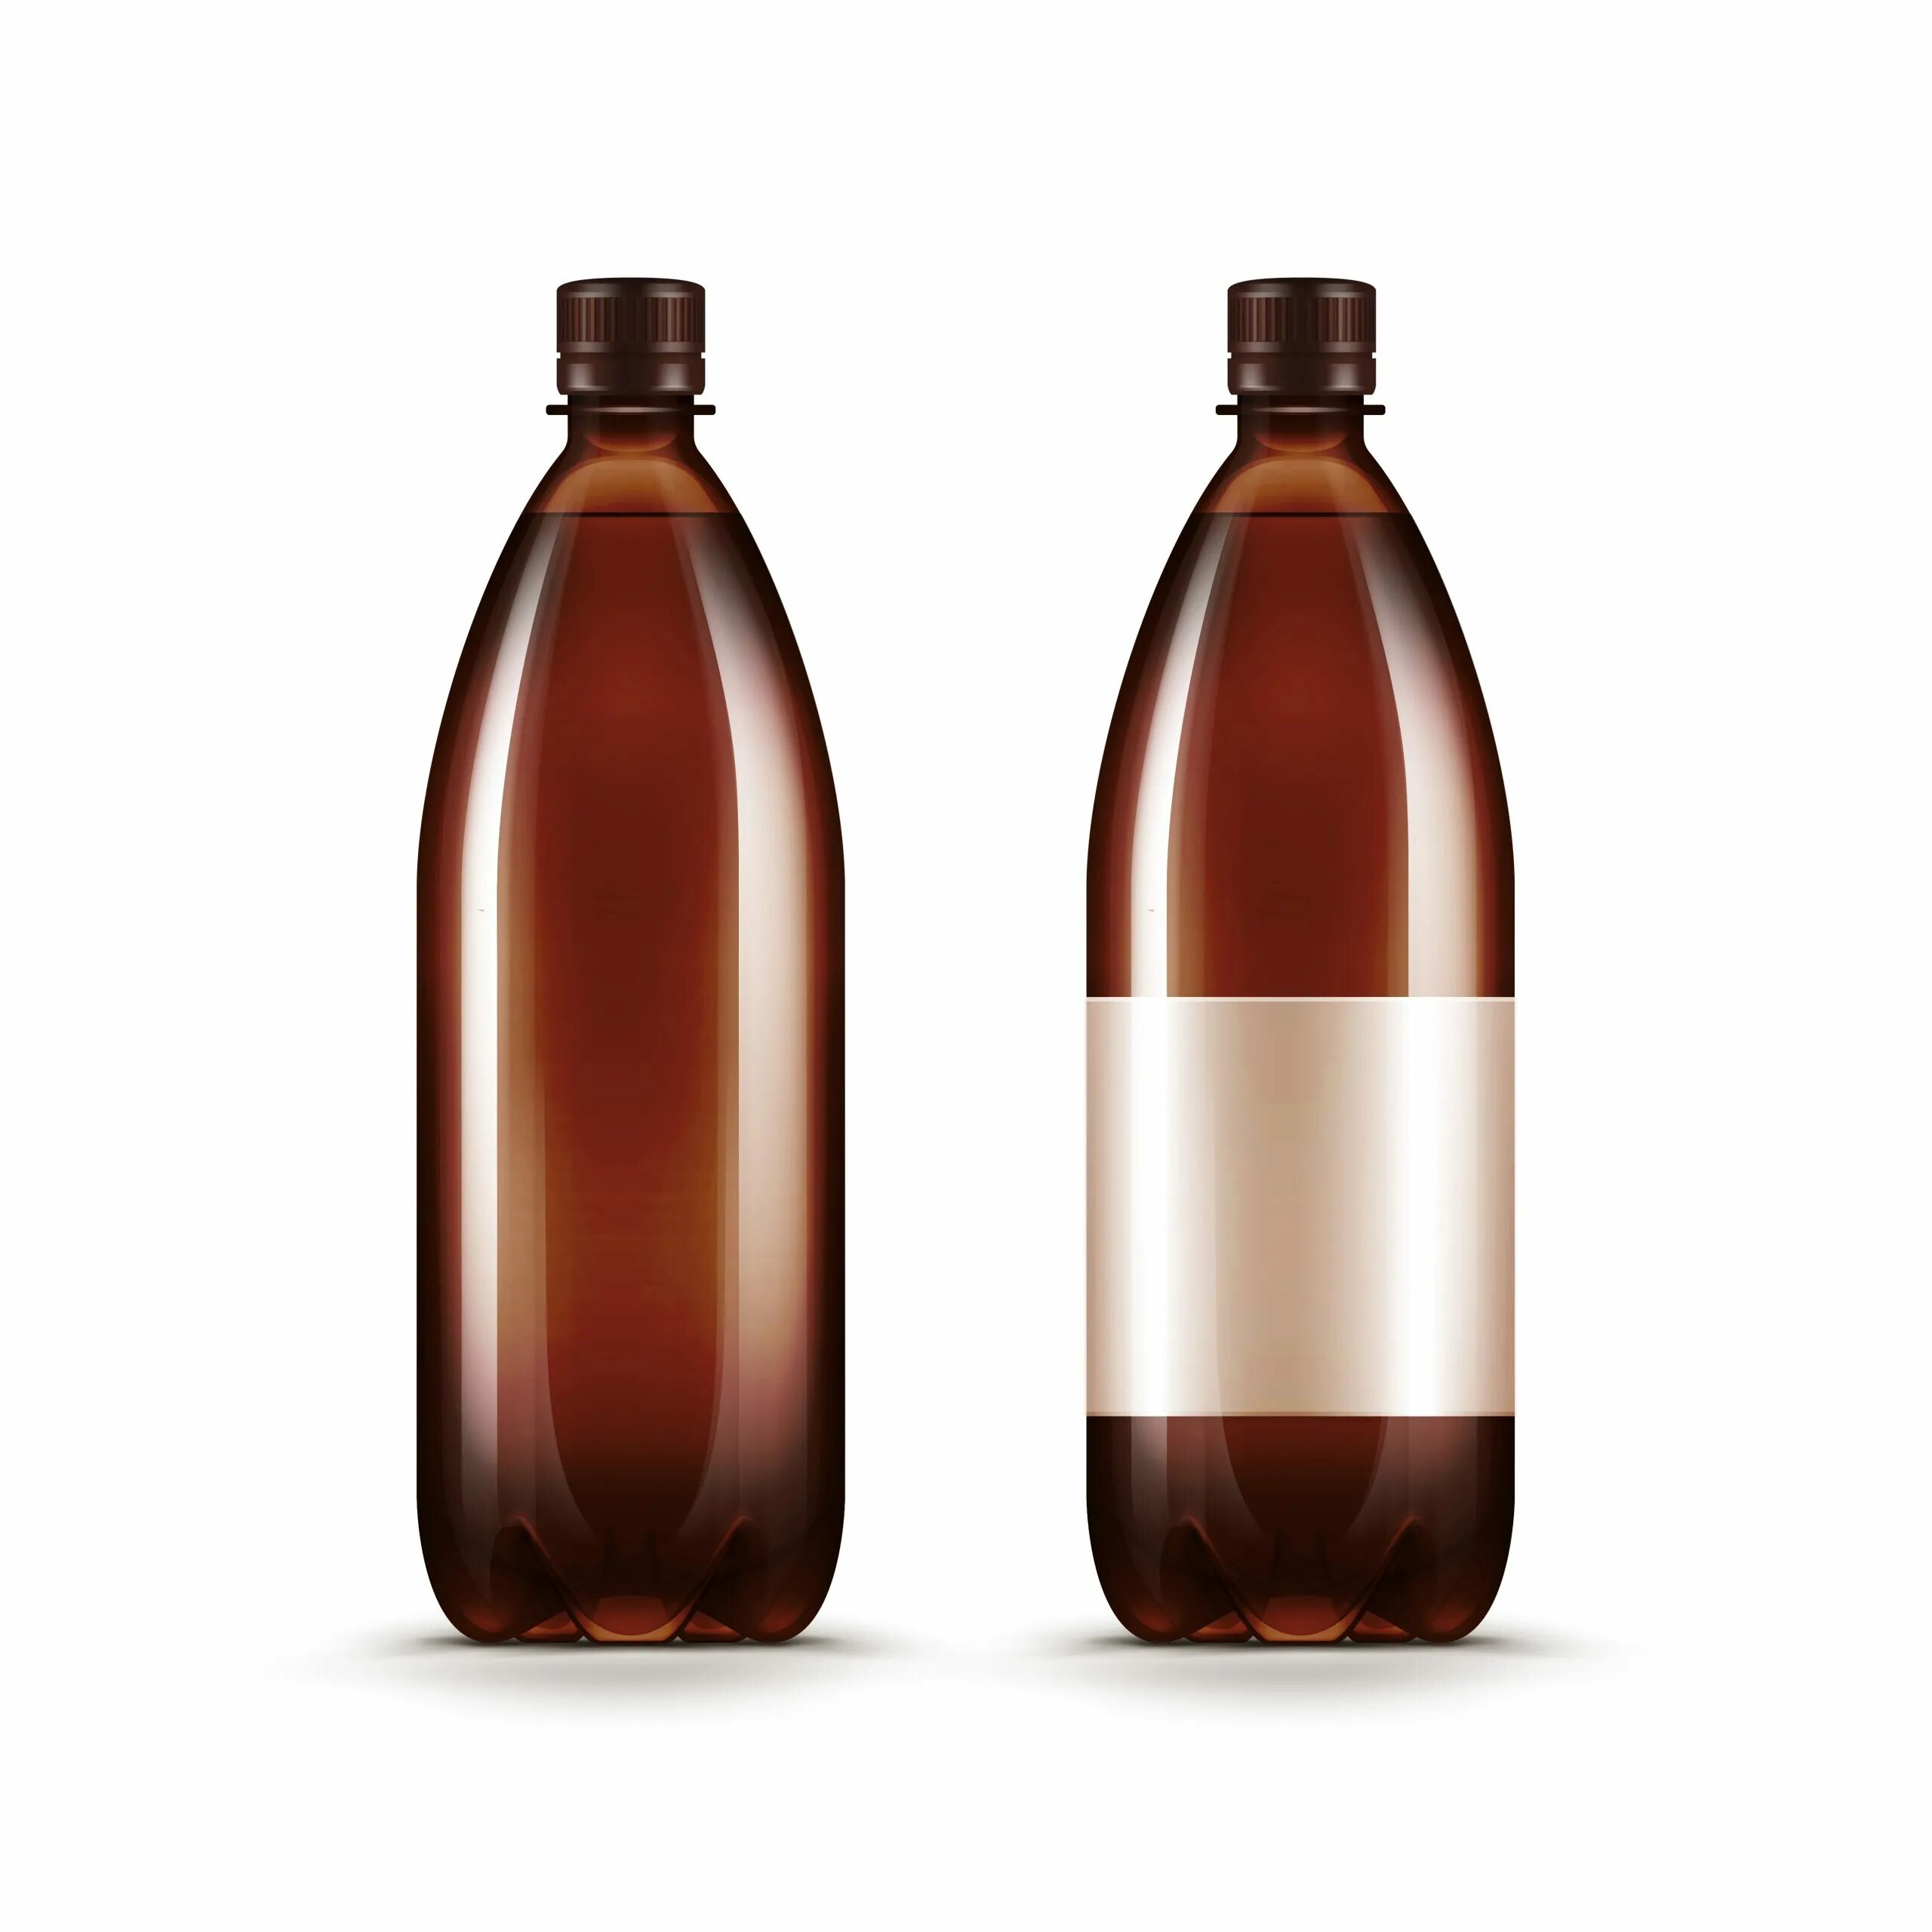 Квас в пластиковой бутылке. Пиво в пластиковых бутылках. Бутылка кваса. Коричневая пластиковая бутылка. Квас в пластиковых бутылках.